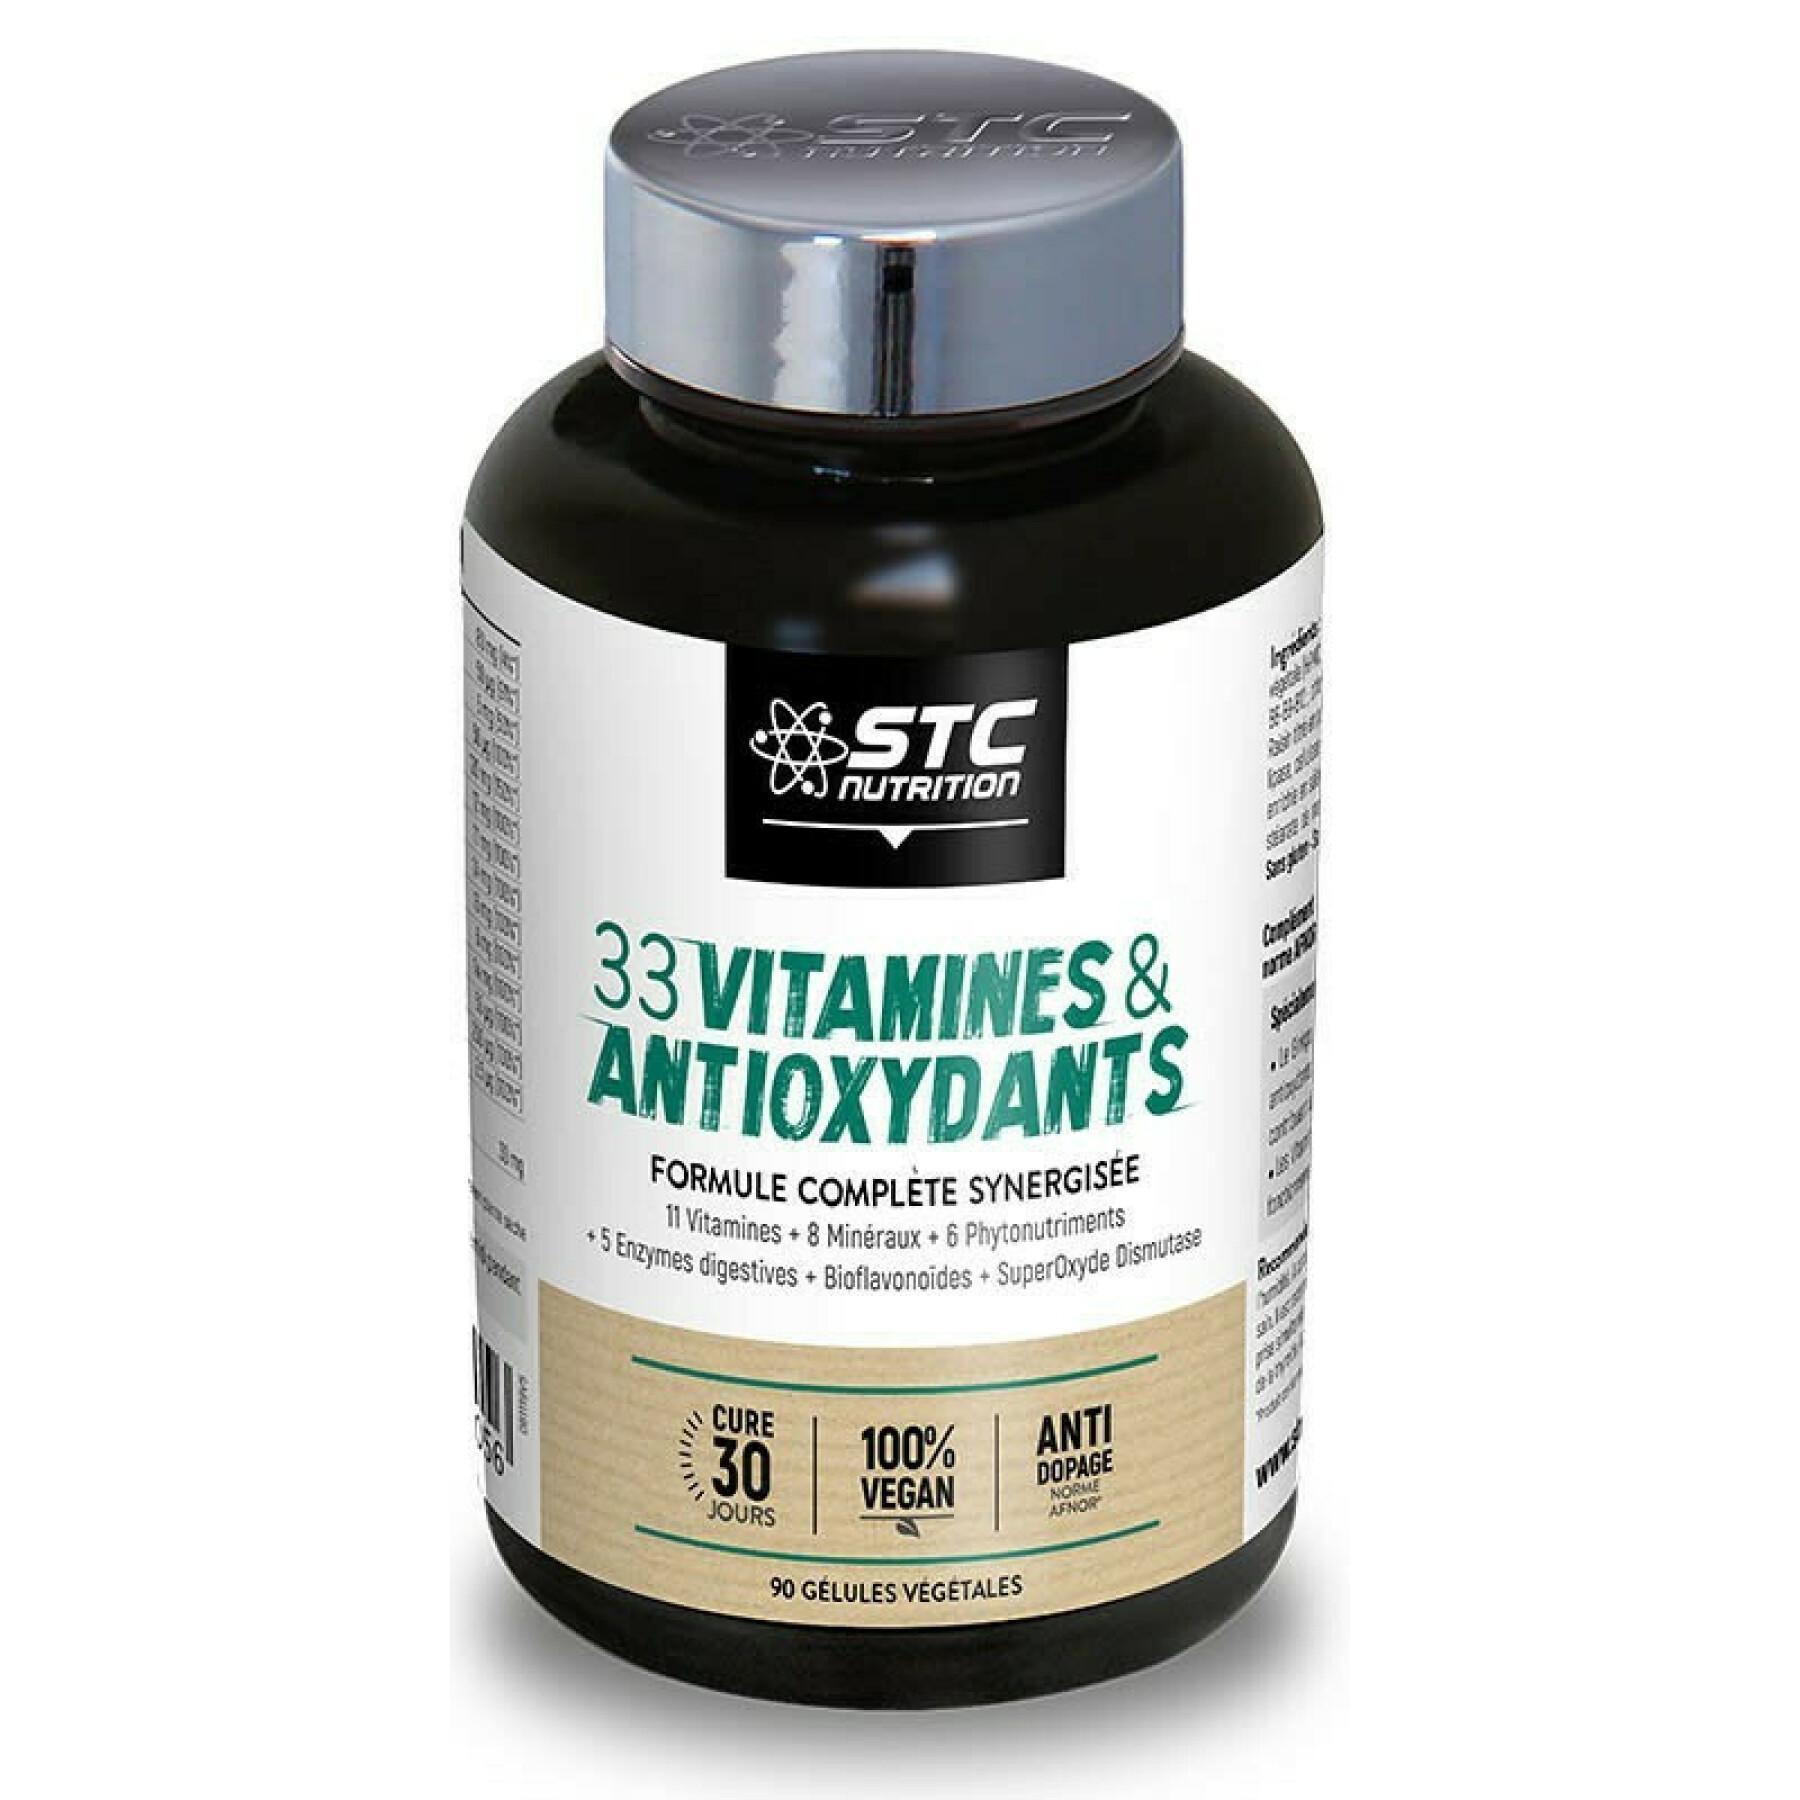 Complete synergistic formula 33 vitamins & antioxidants STC Nutrition - 90 gélules végétales